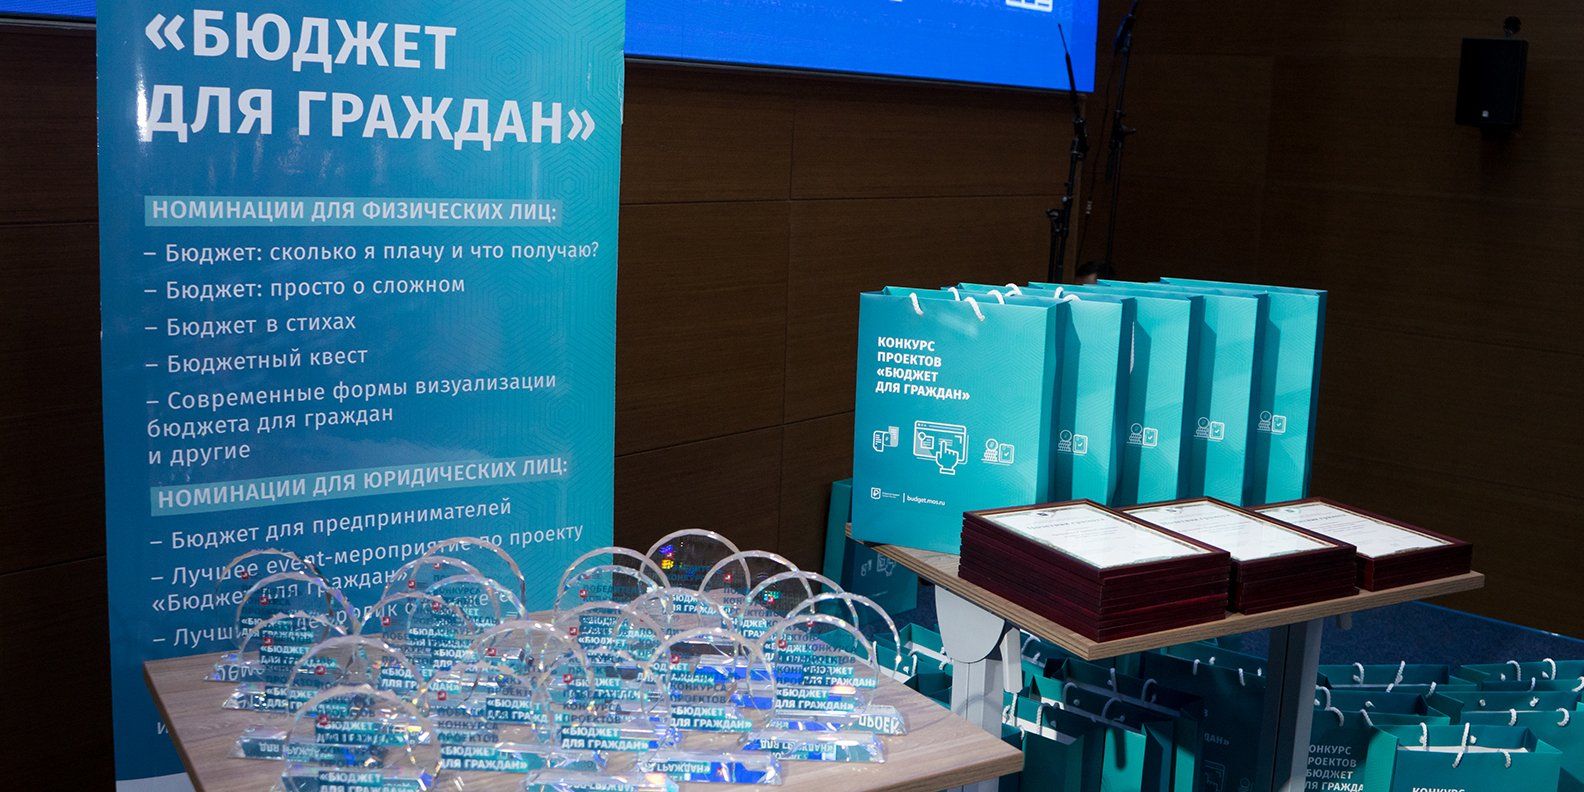 Участвовать в конкурсе могут все. Фото: сайт мэра Москвы 